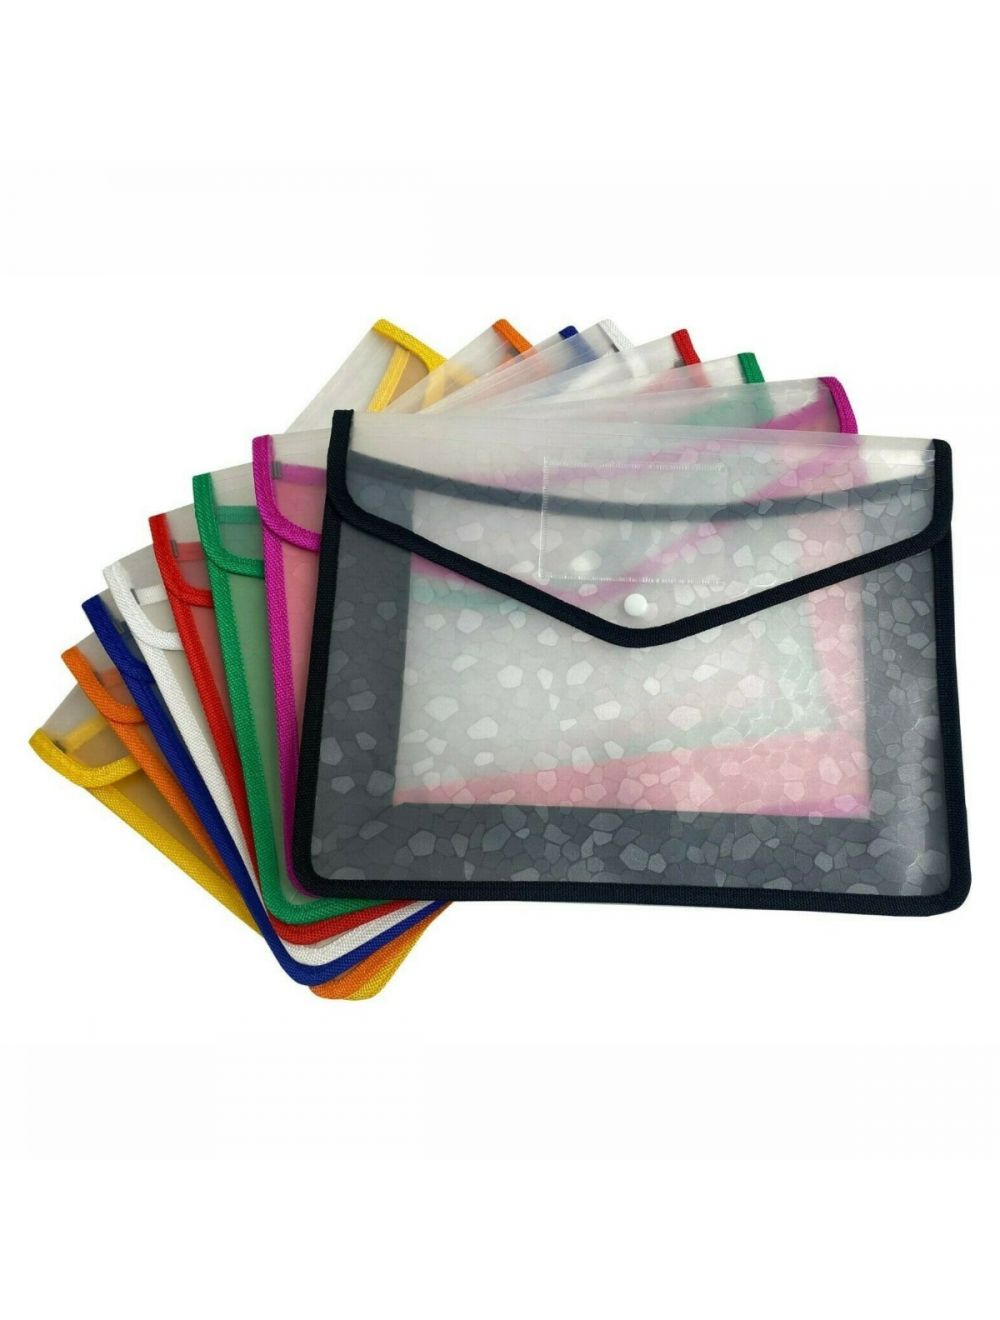 OFFICE 5 x A4 Plastic wallets Stud Document Wallet Files Folders Filing School Office 